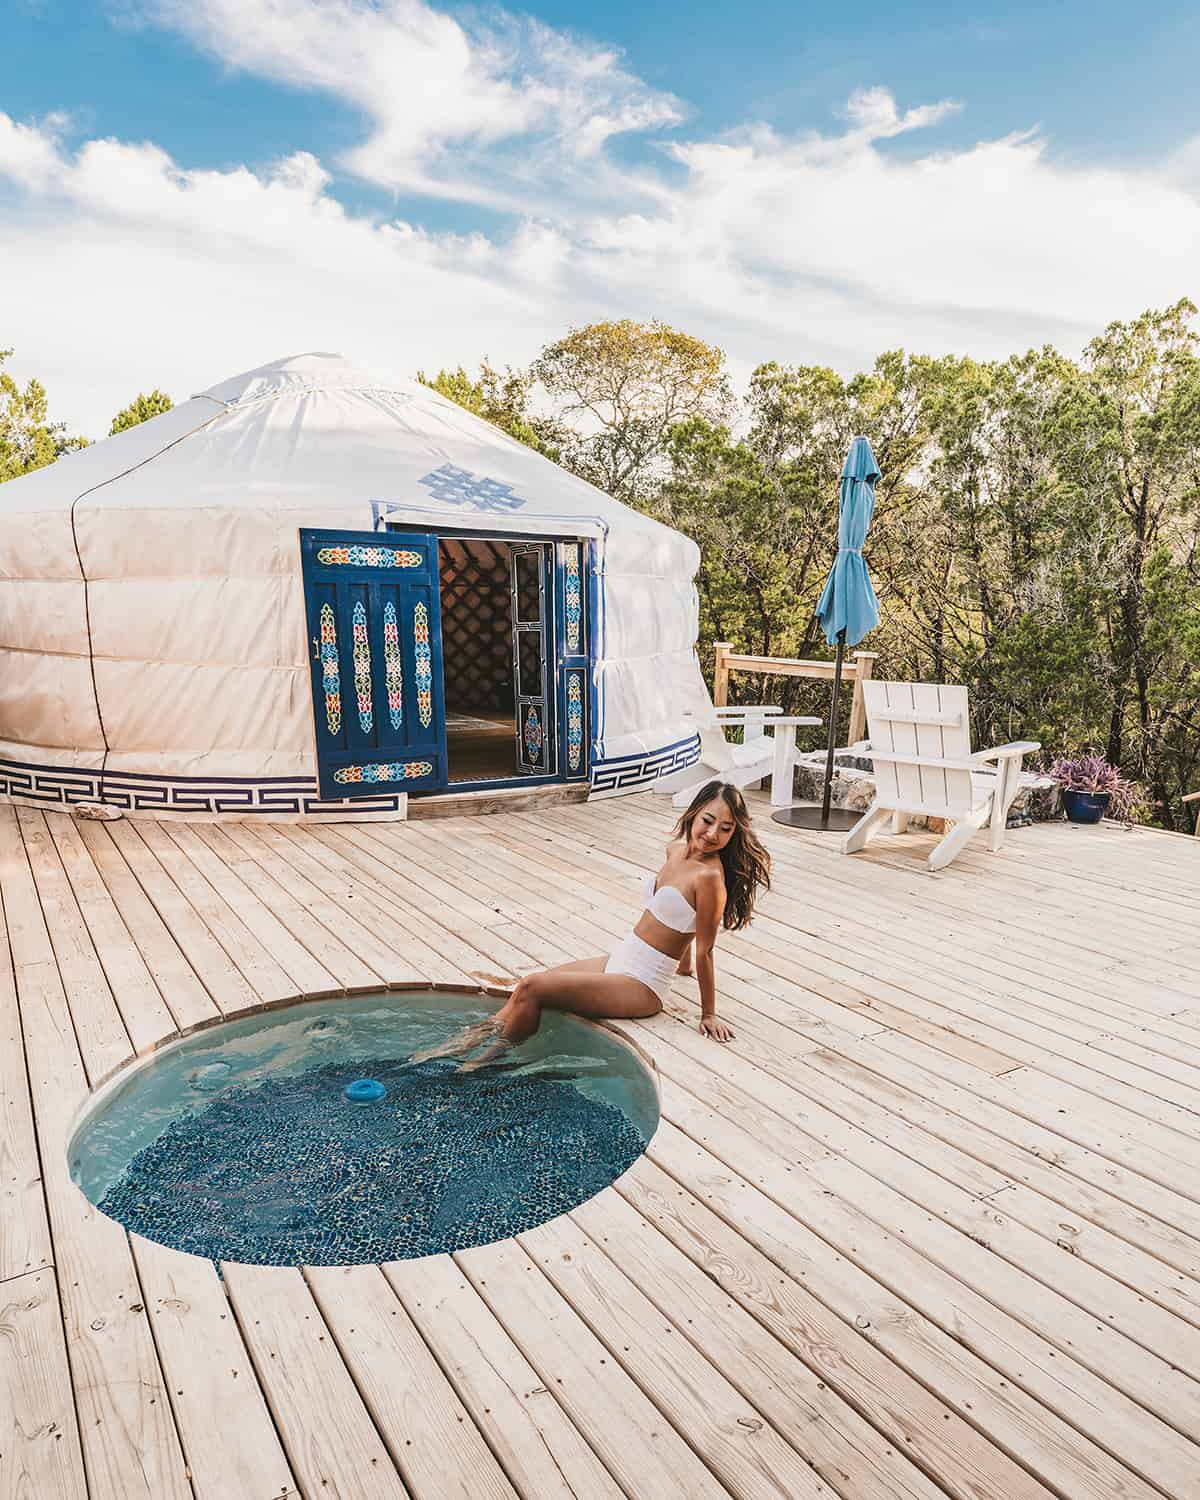 Yurtopia - glamping yurts in Wimberley Texas